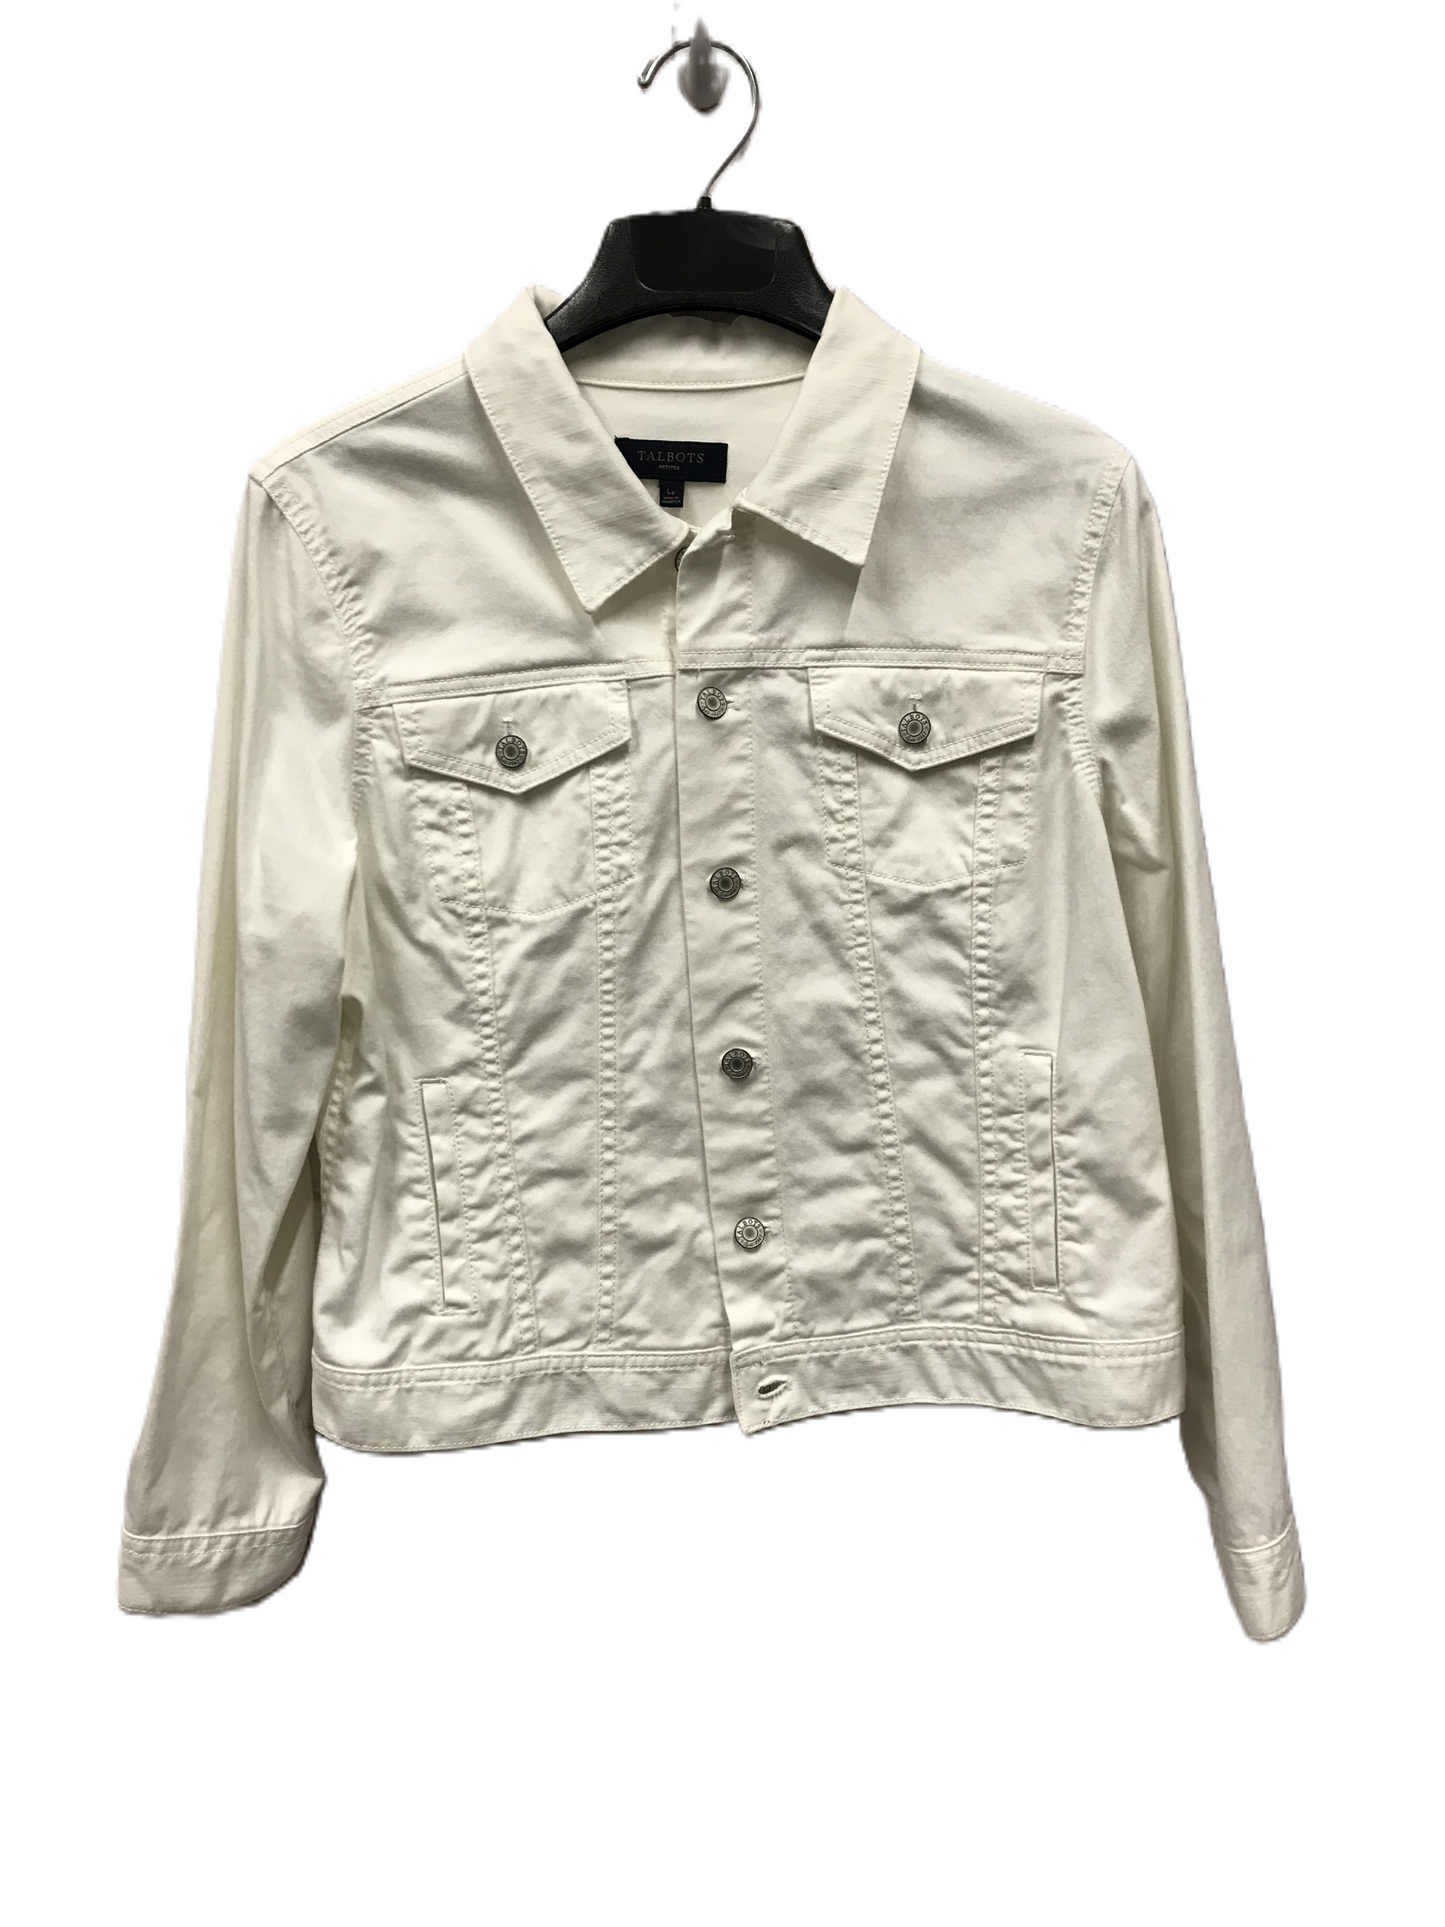 White Denim Jacket Denim By Talbots, Size: Petite L